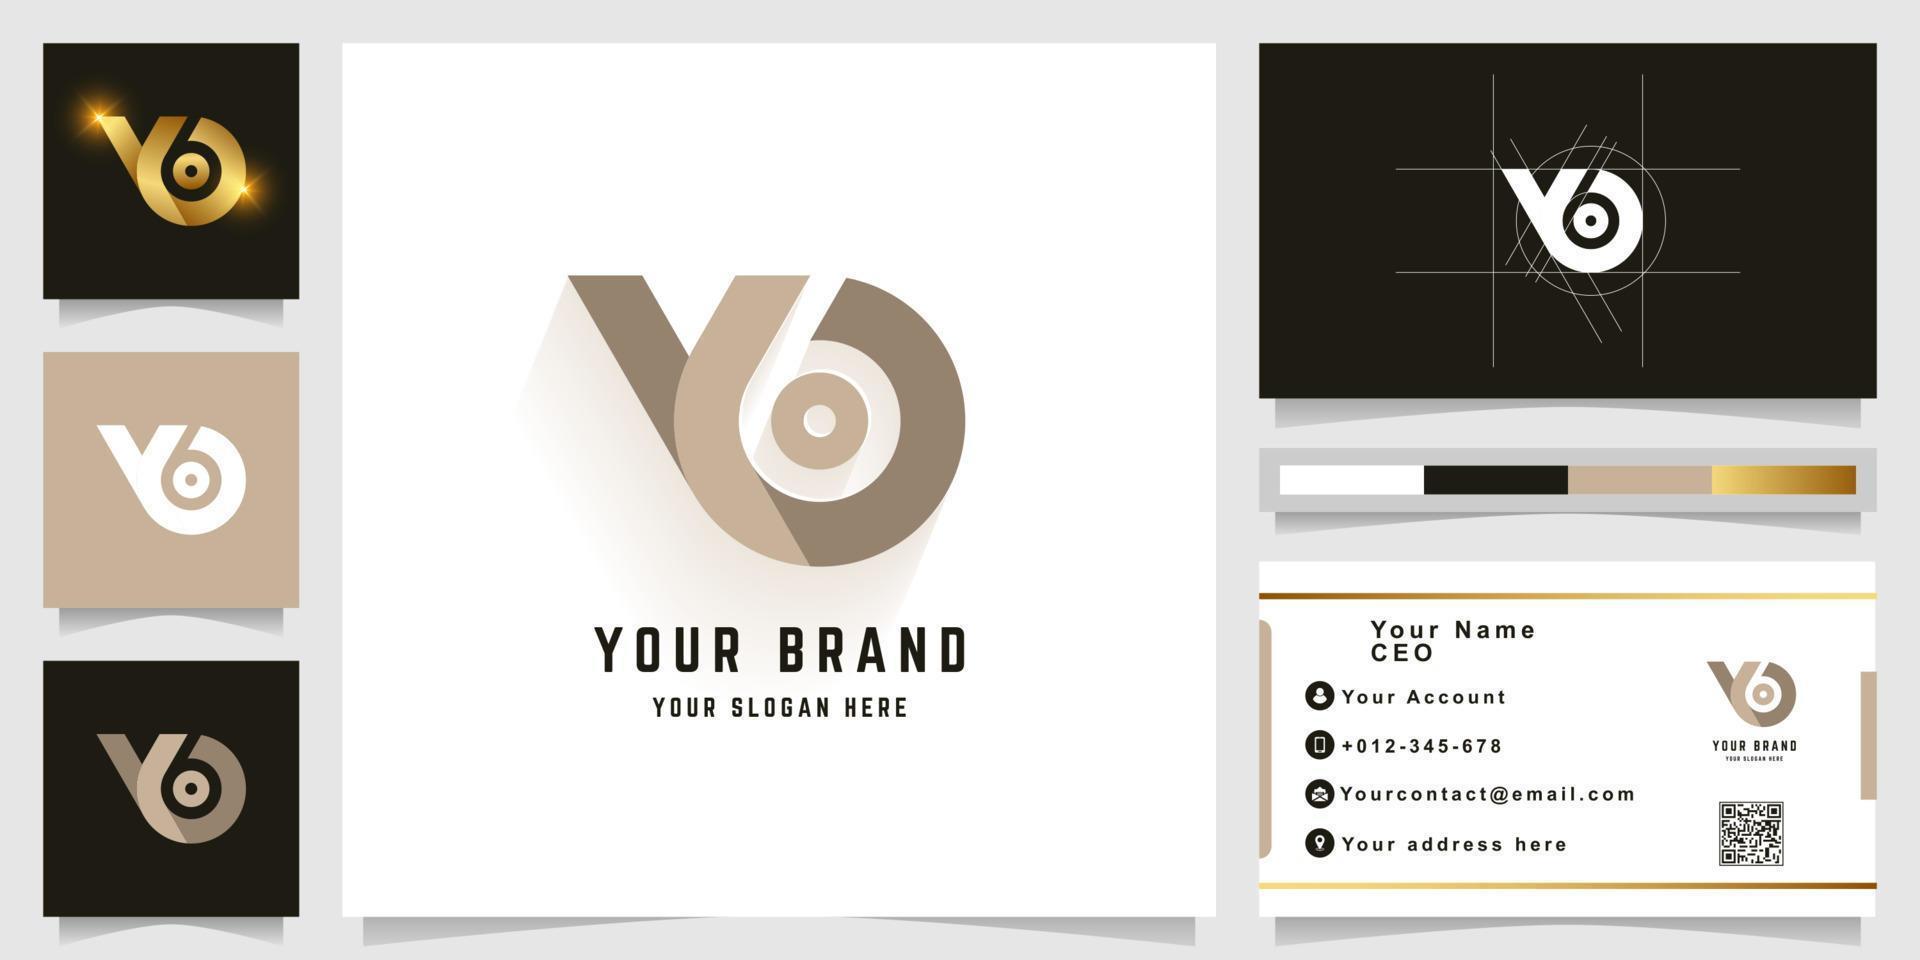 Buchstabe yo oder y6 Monogramm-Logo mit Visitenkarten-Design vektor